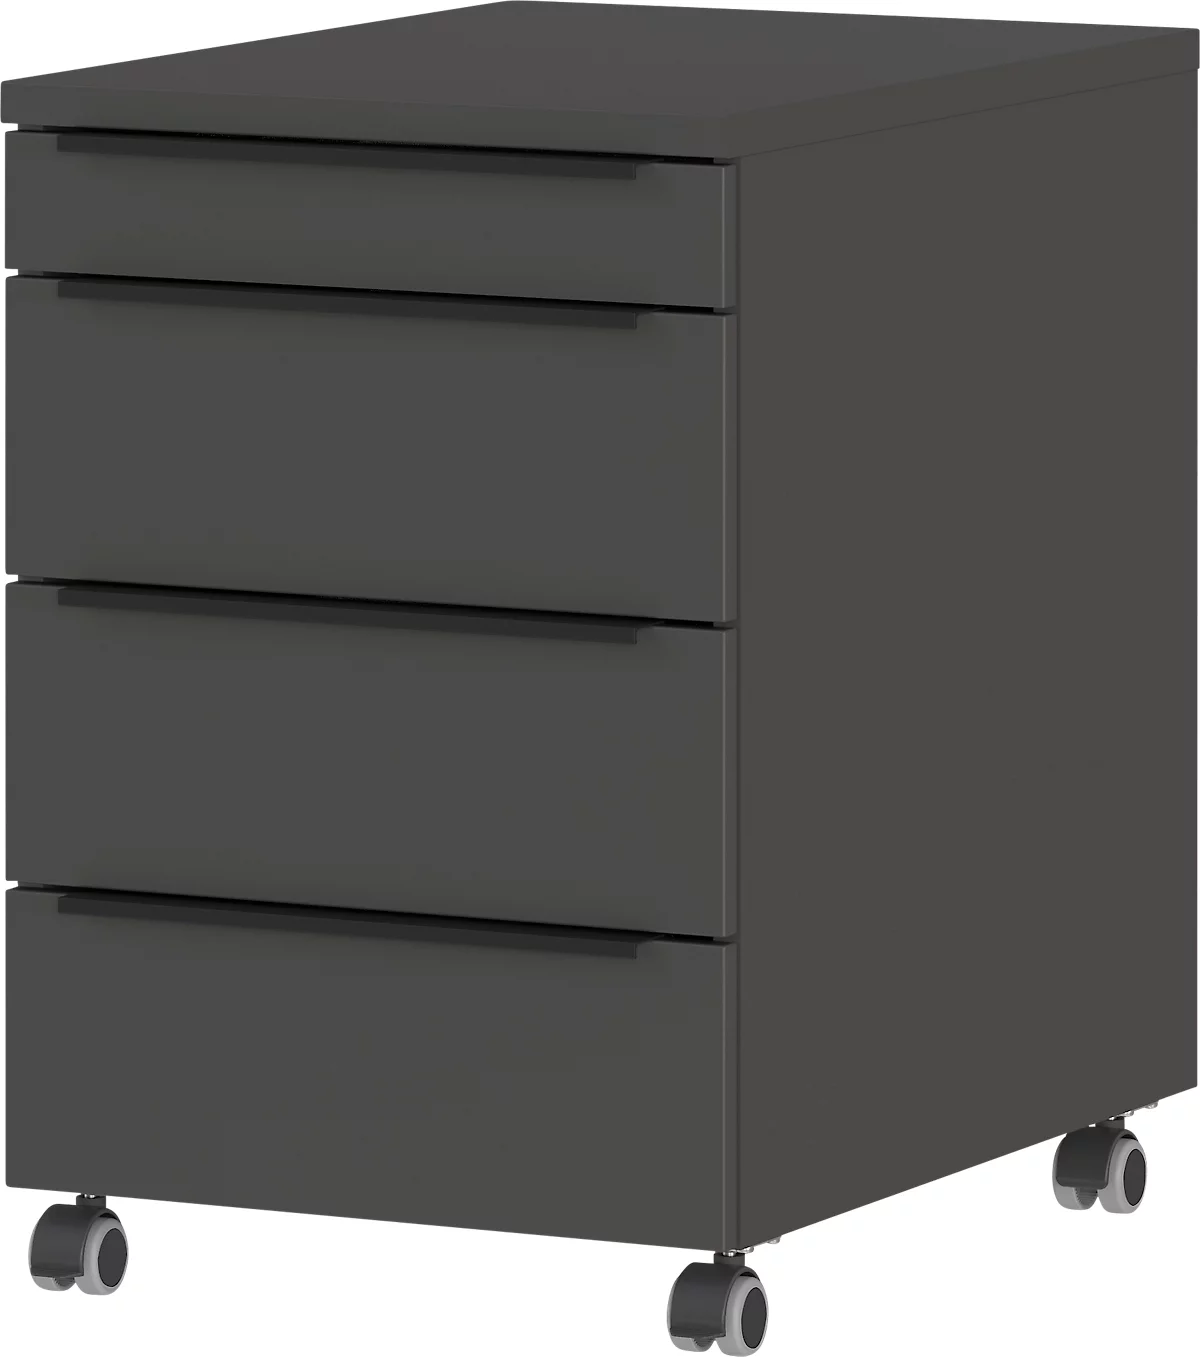 Rollcontainer Porto, 4 Schubladen inkl. Utensilienfach und 1 abschließbaren Schublade, B 420 x T 600 x H 630 mm, graphit